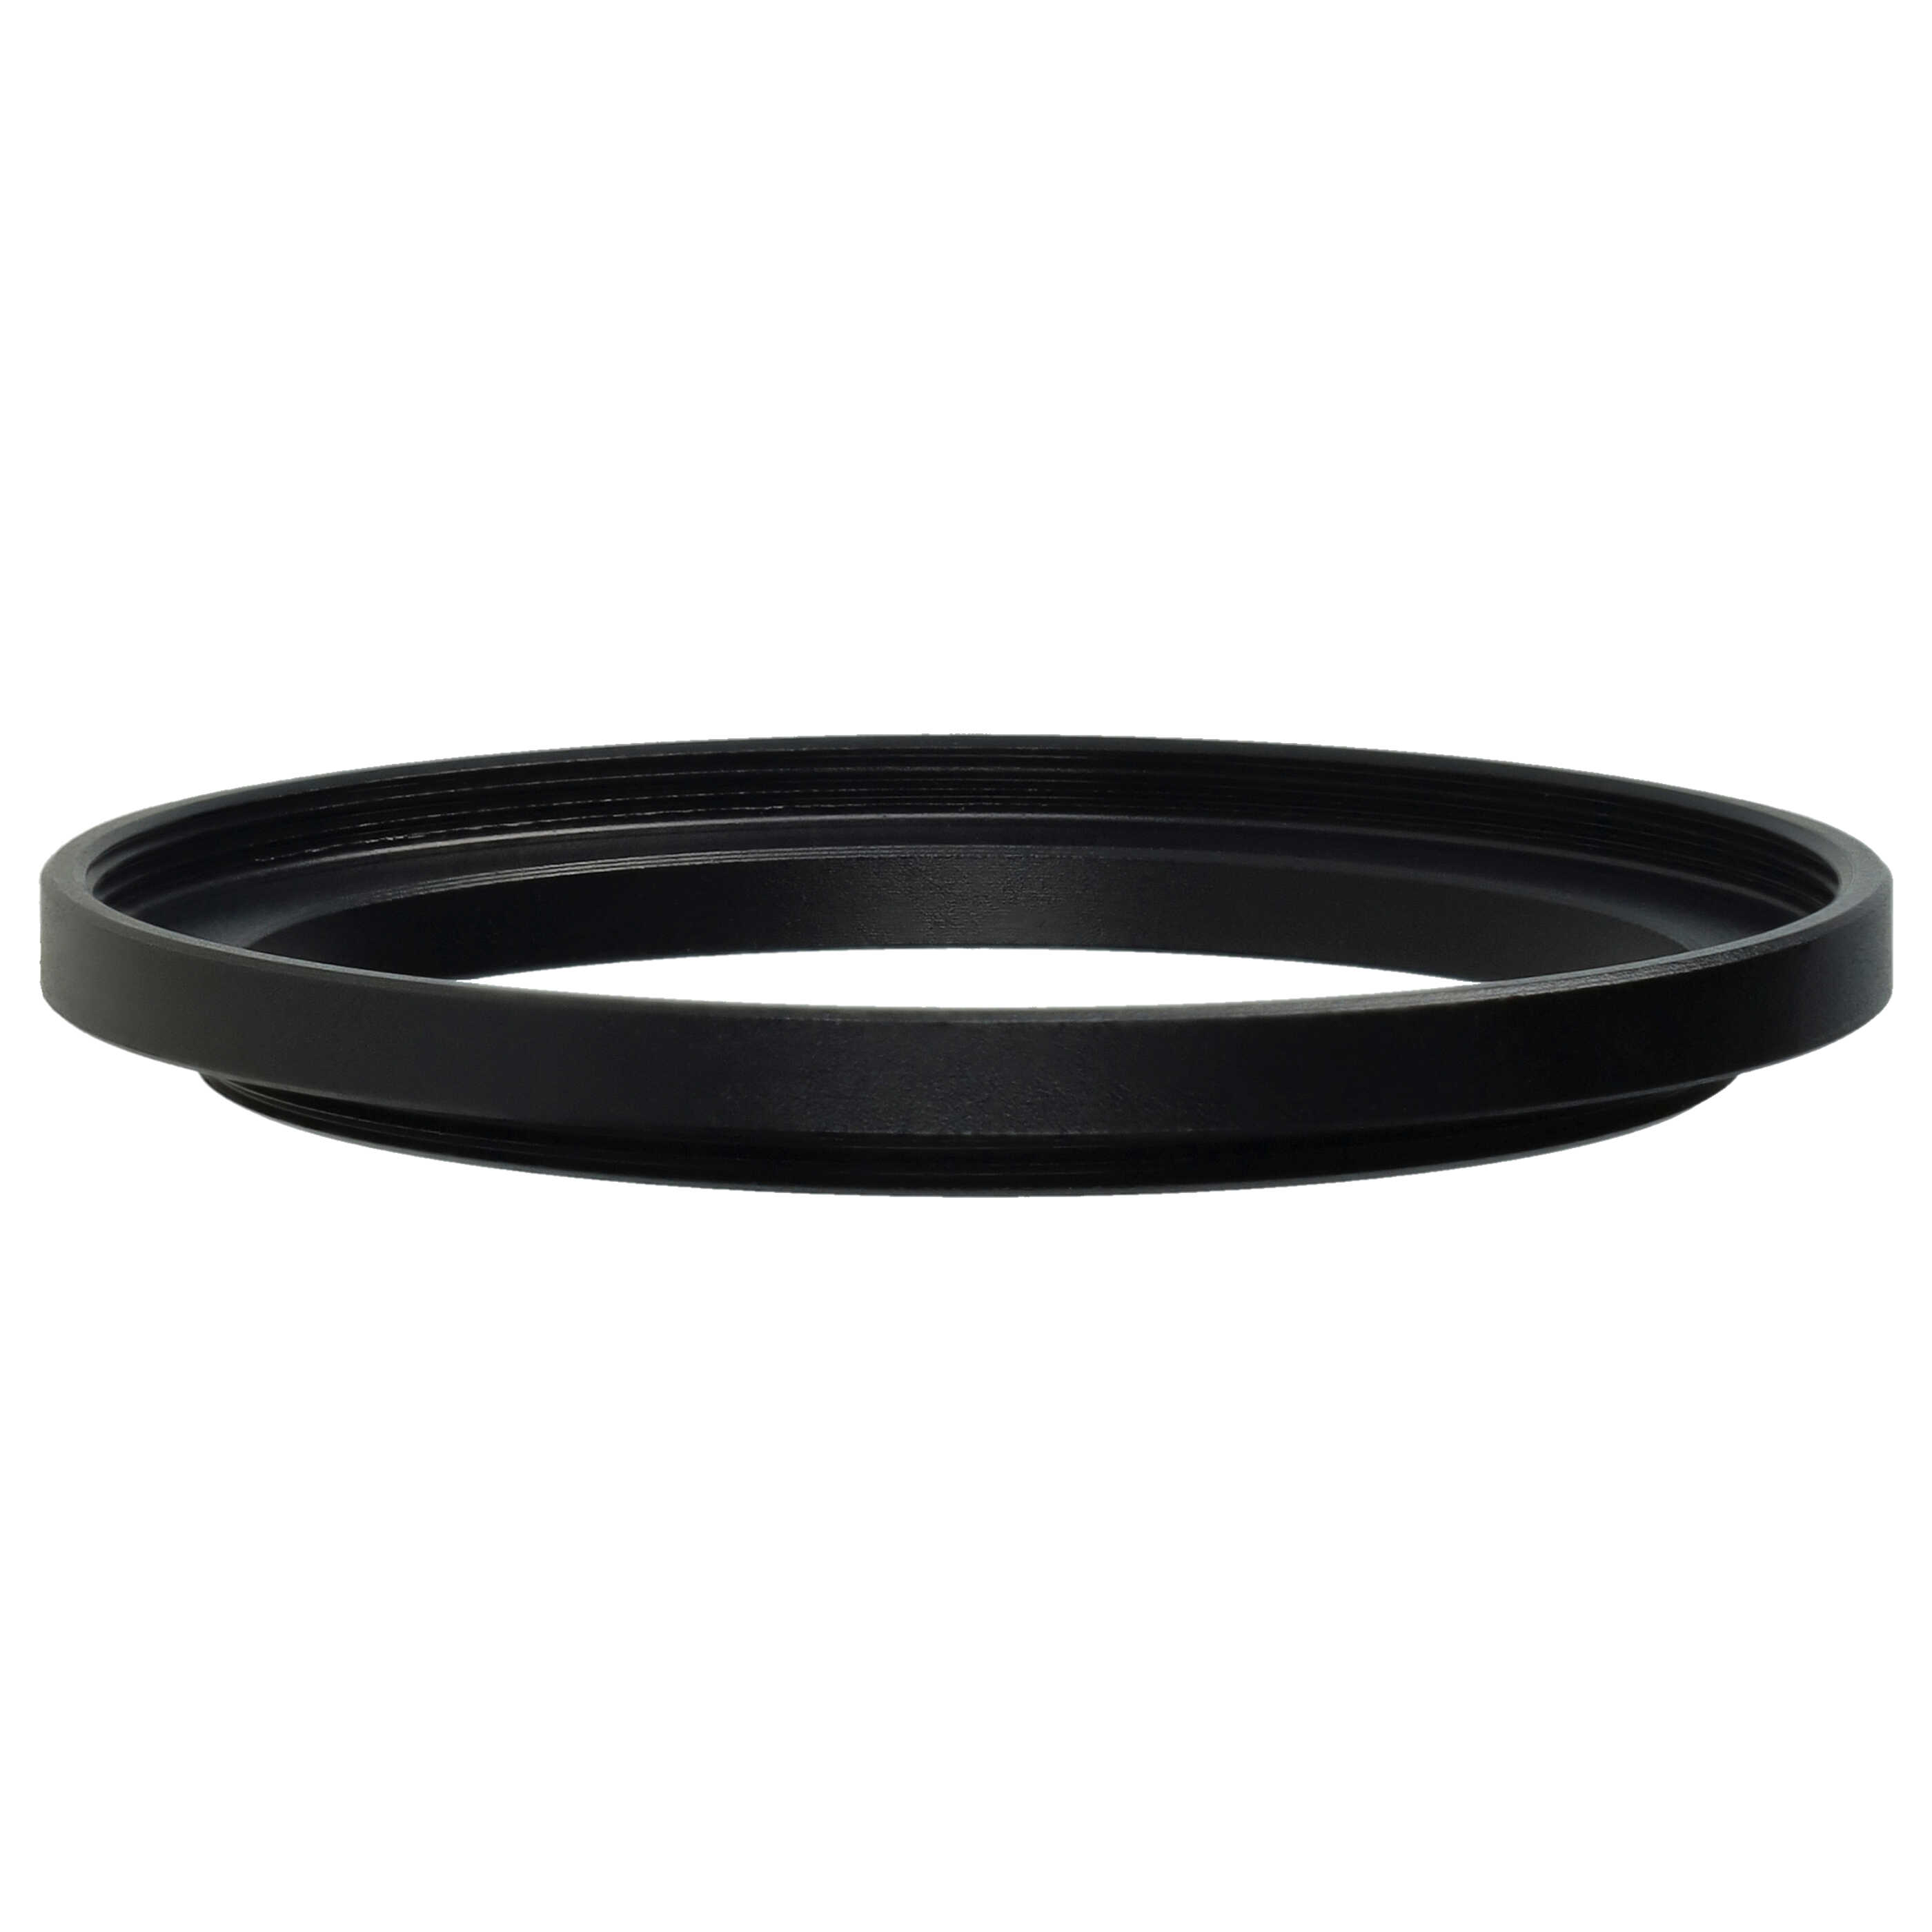 Step-Up-Ring Adapter 46 mm auf 52 mm passend für diverse Kamera-Objektive - Filteradapter